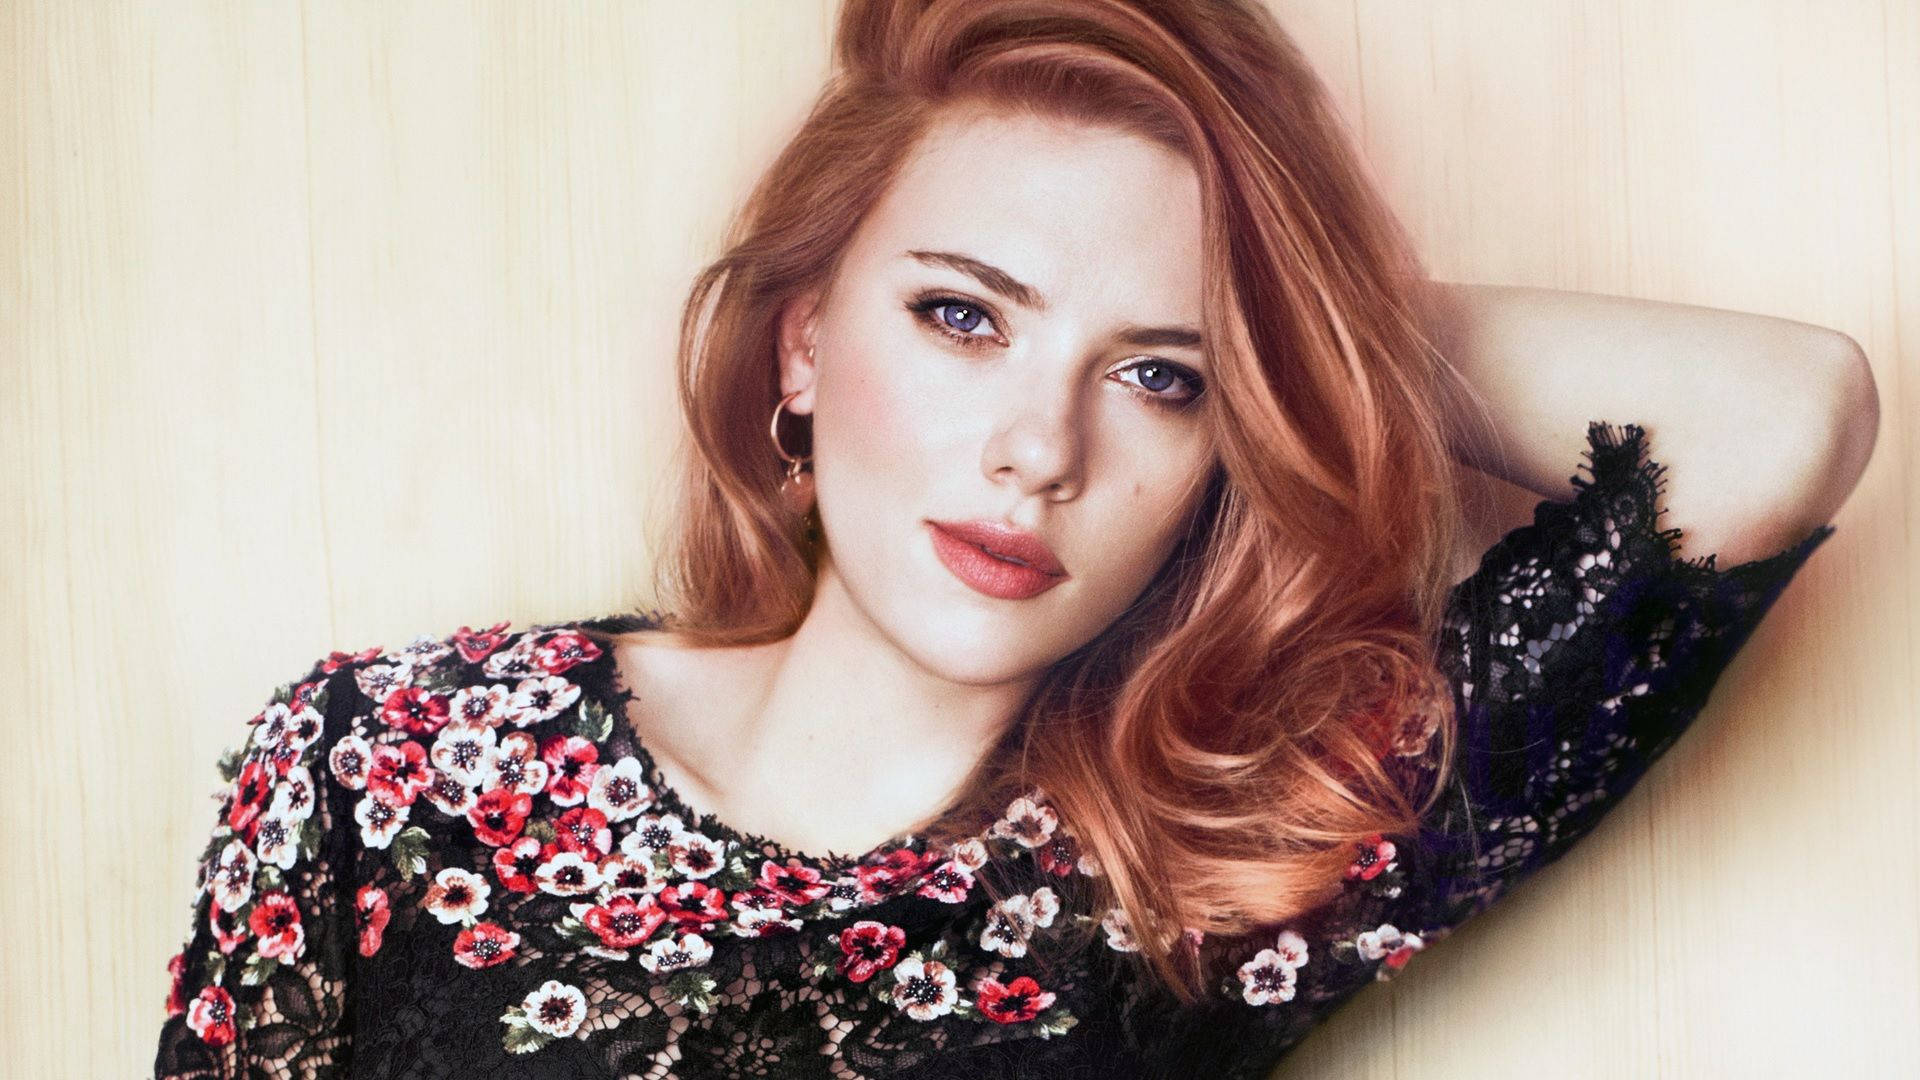 Scarlett Johansson looking stunning in spring look Wallpaper